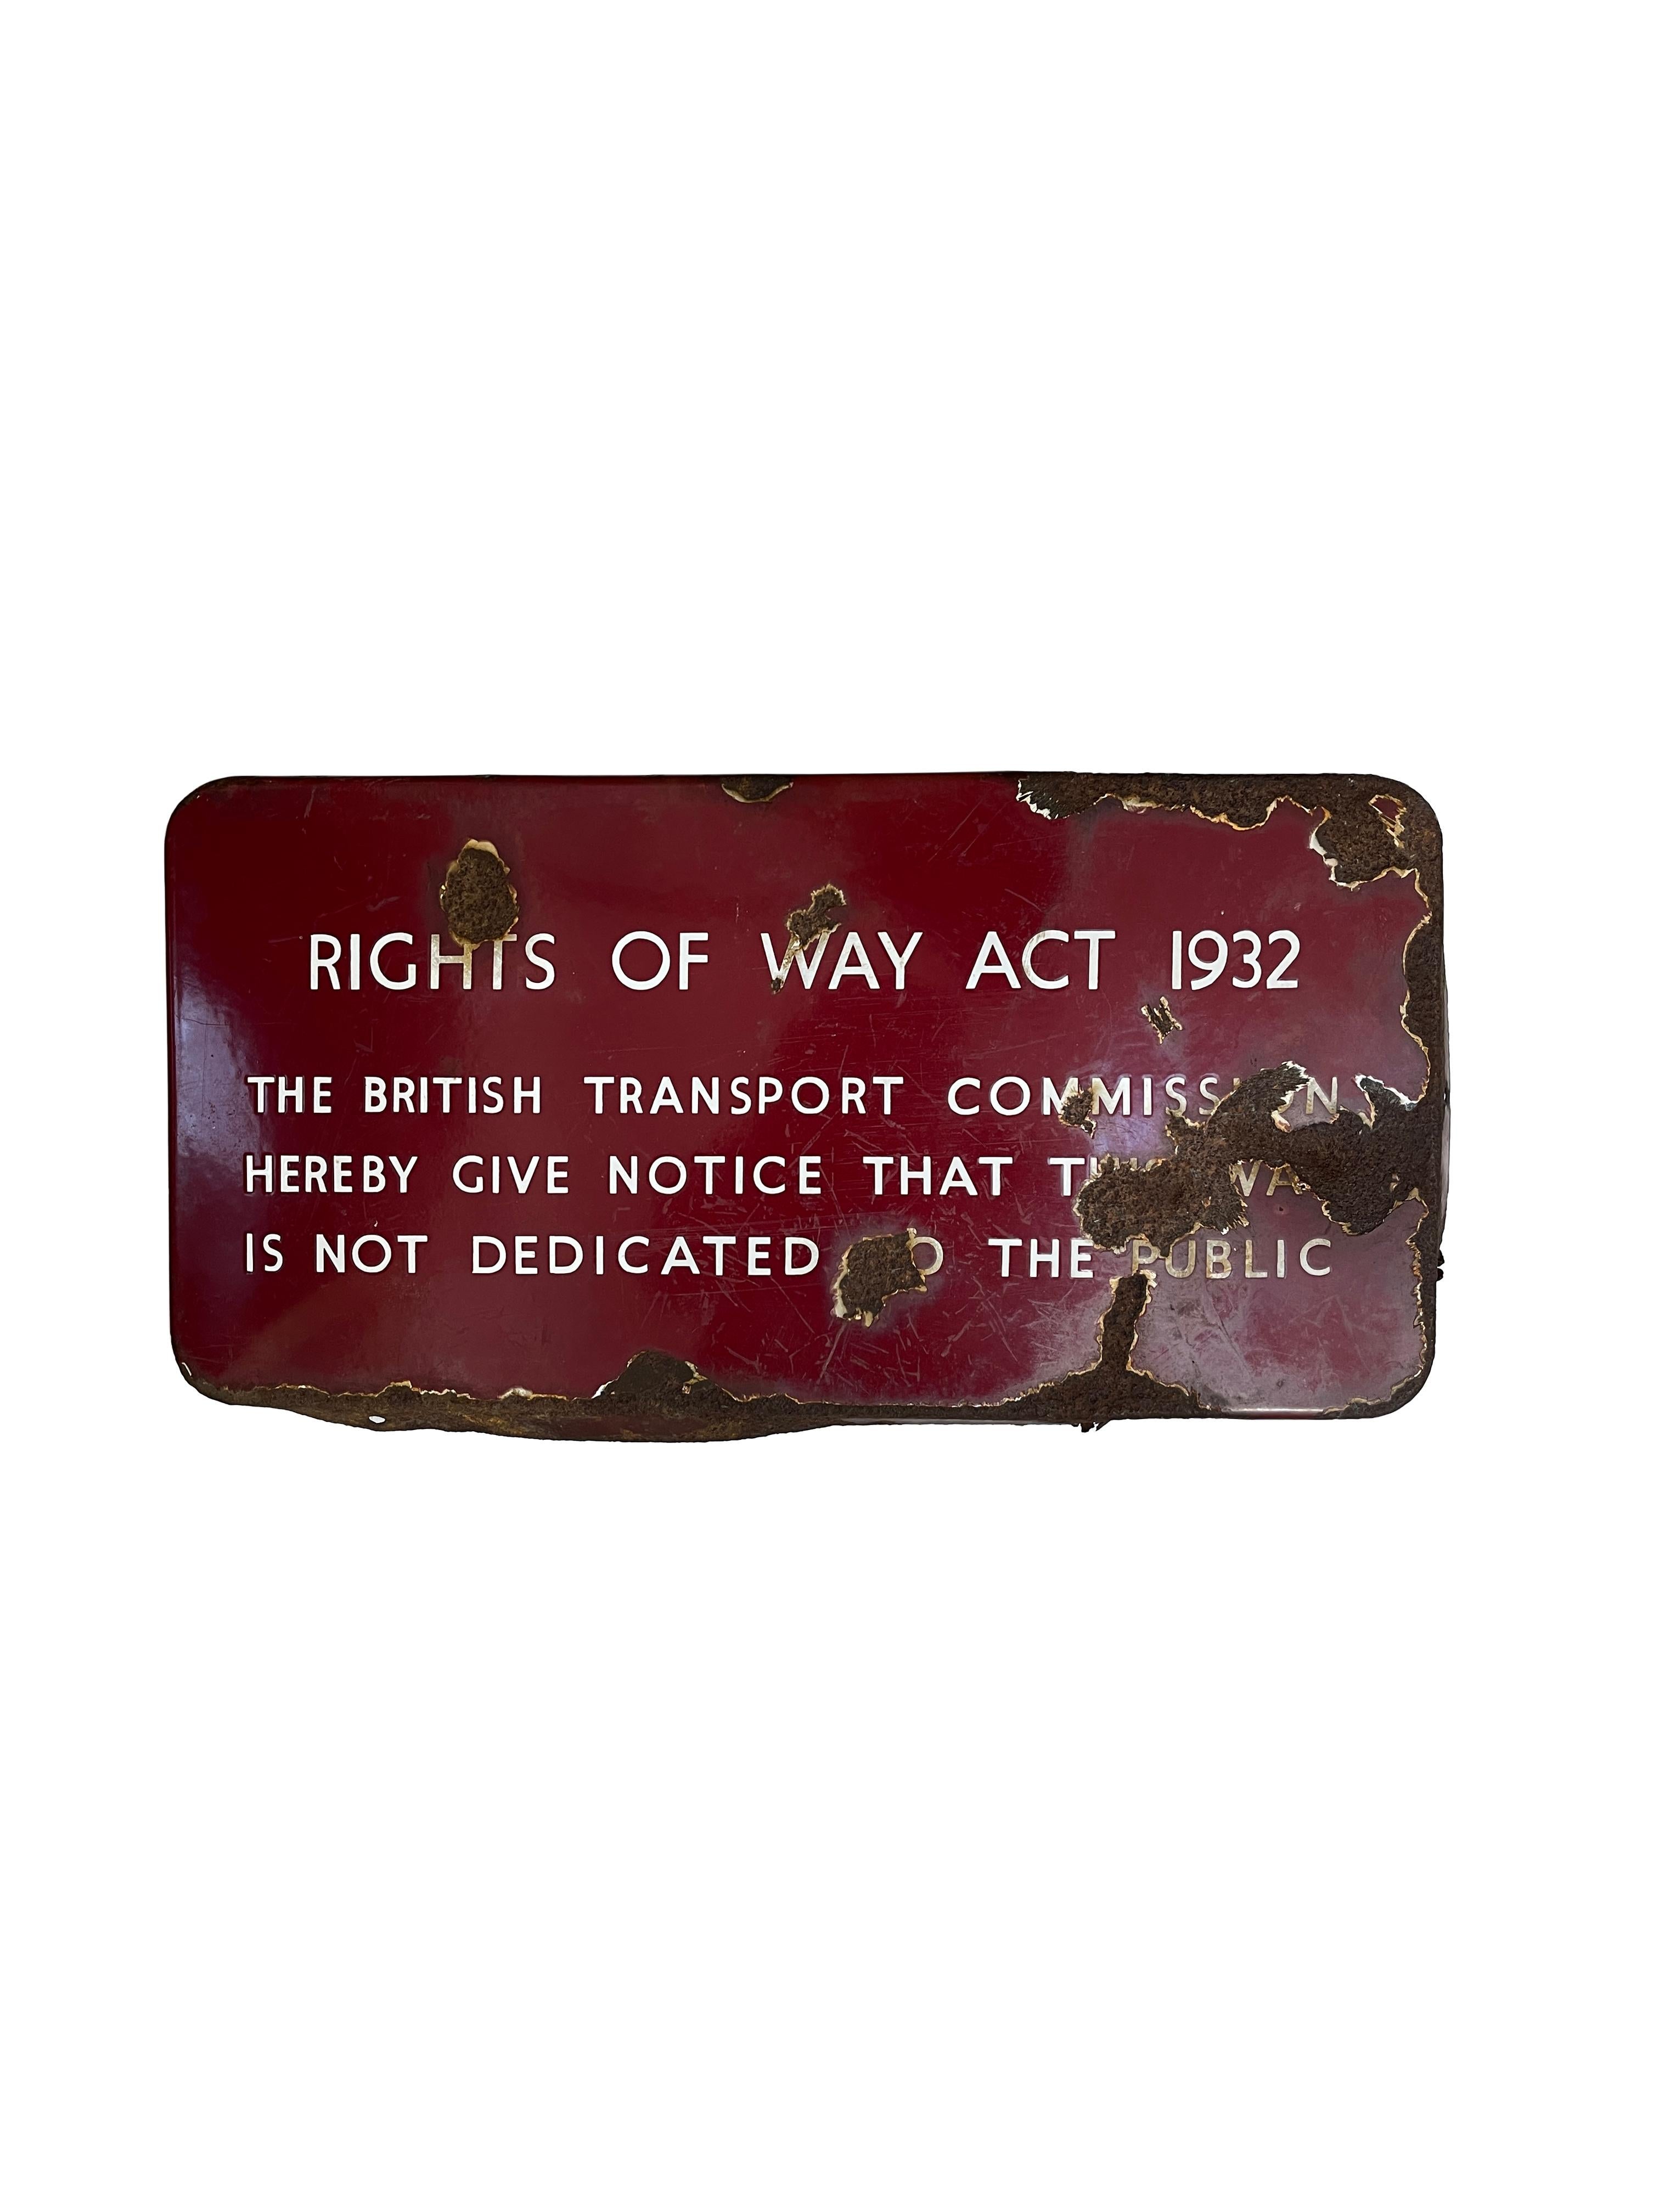 - Ein Originalschild der britischen Eisenbahn, um 1940.
- Dieses Schild aus der Region Midlands trägt die Inschrift „Rights Of Way Act 1932 The British Transport Commission Hereby Give Notice That This Way Is Not Dedicated To The Public“.
- Die